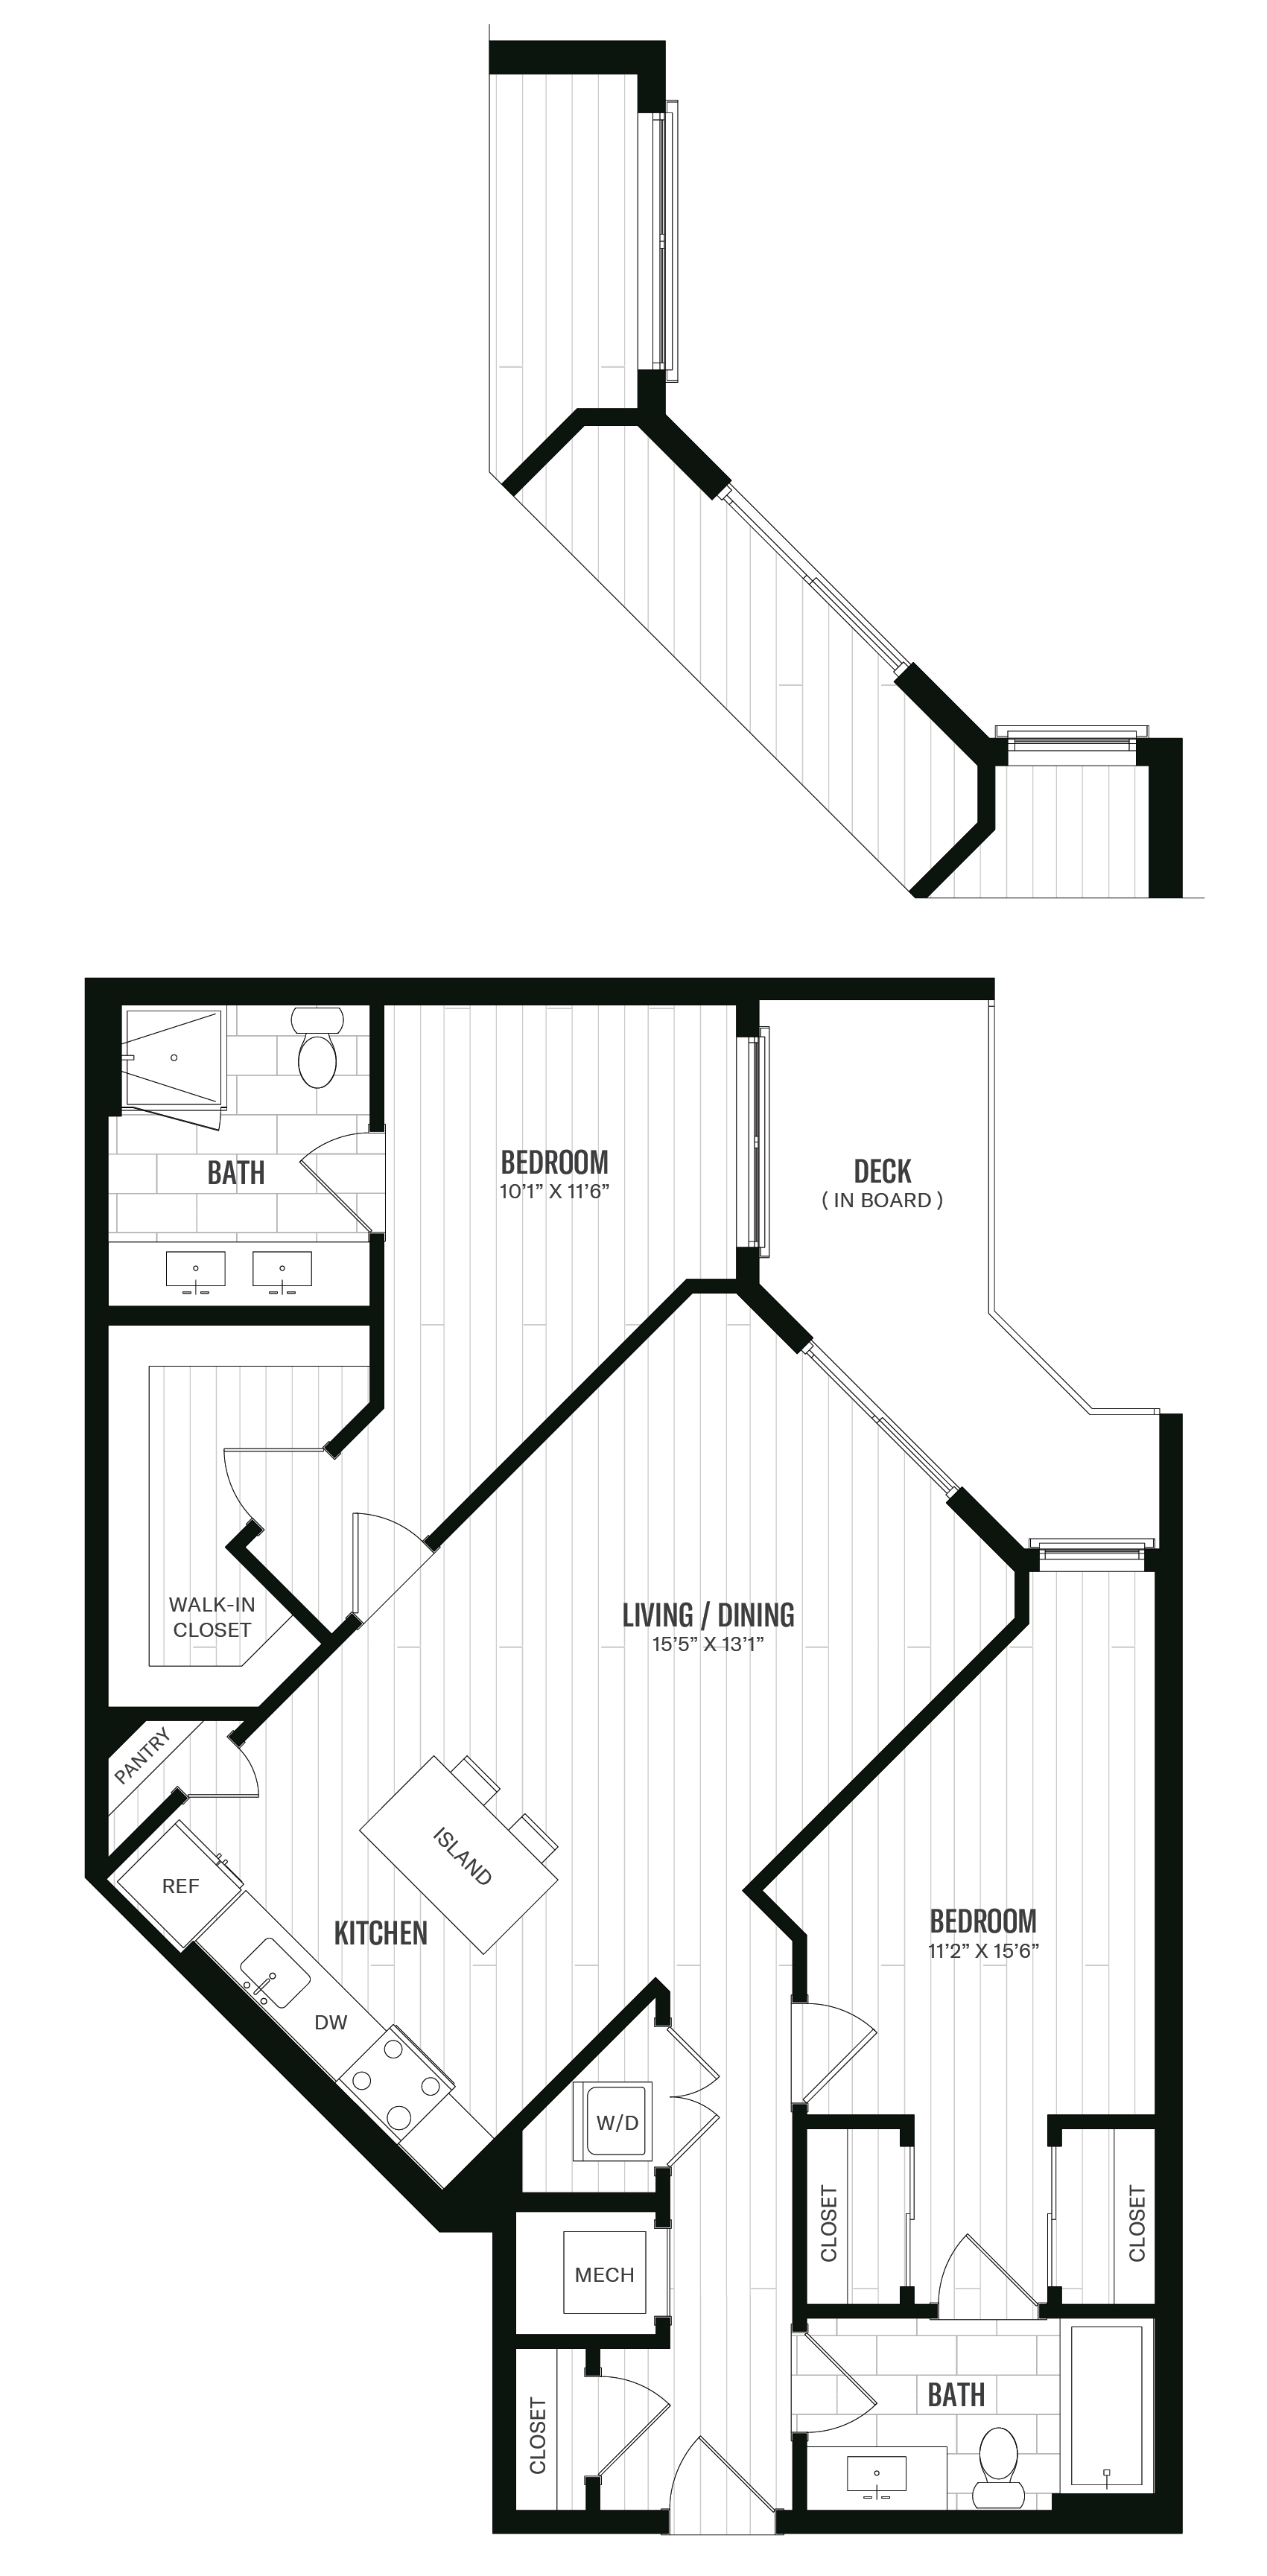 Floorplan image of unit 657